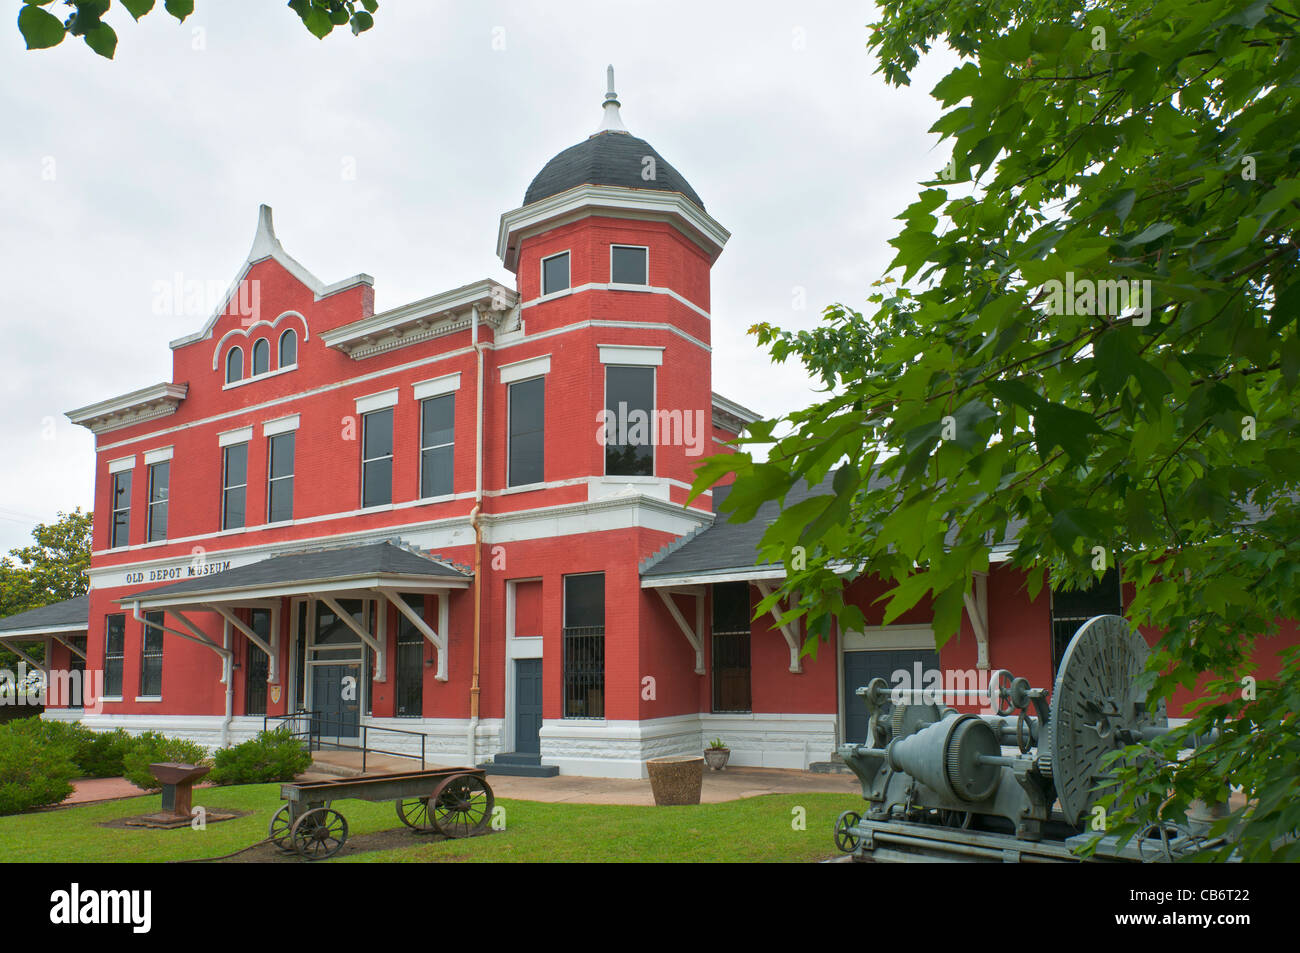 New York, Selma, ancien Depot Museum, restauré railroad depot contient des expositions sur les collectivités locales, la guerre civile, et l'histoire afro-américaine Banque D'Images